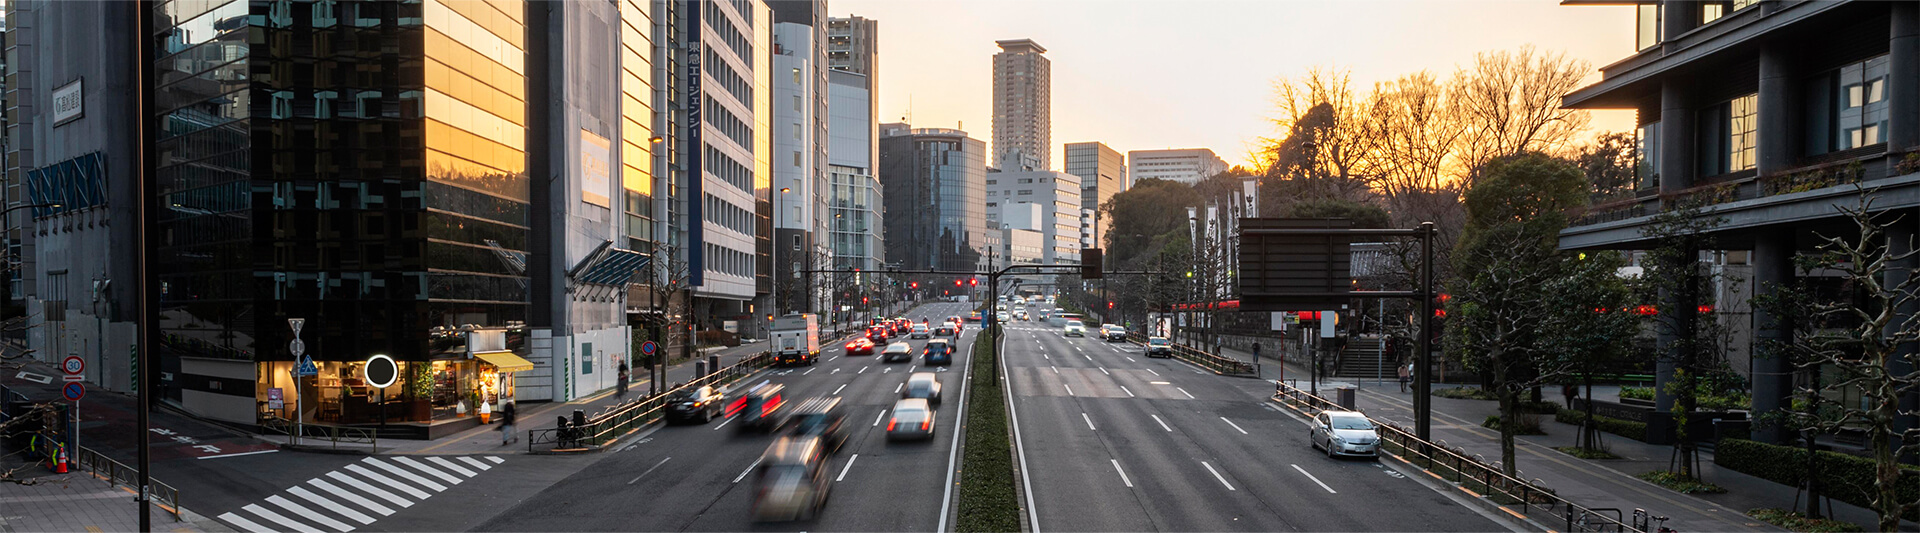 Nhật Bản vận hành phương tiện giao thông chạy được cả trên đường bộ và đường sắt